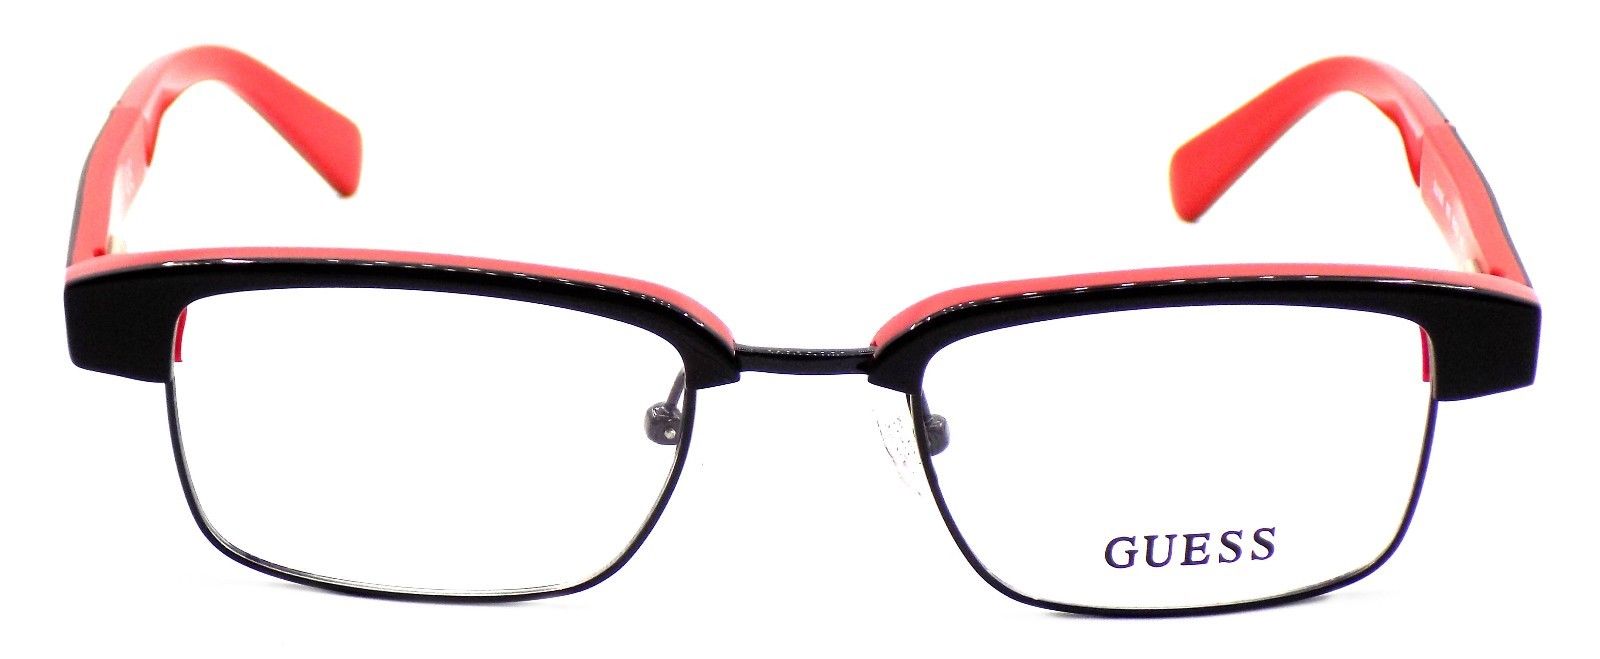 2-GUESS GU1905 005 Men's Eyeglasses Frames 48-20-140 Black / Red + Case-664689774241-IKSpecs